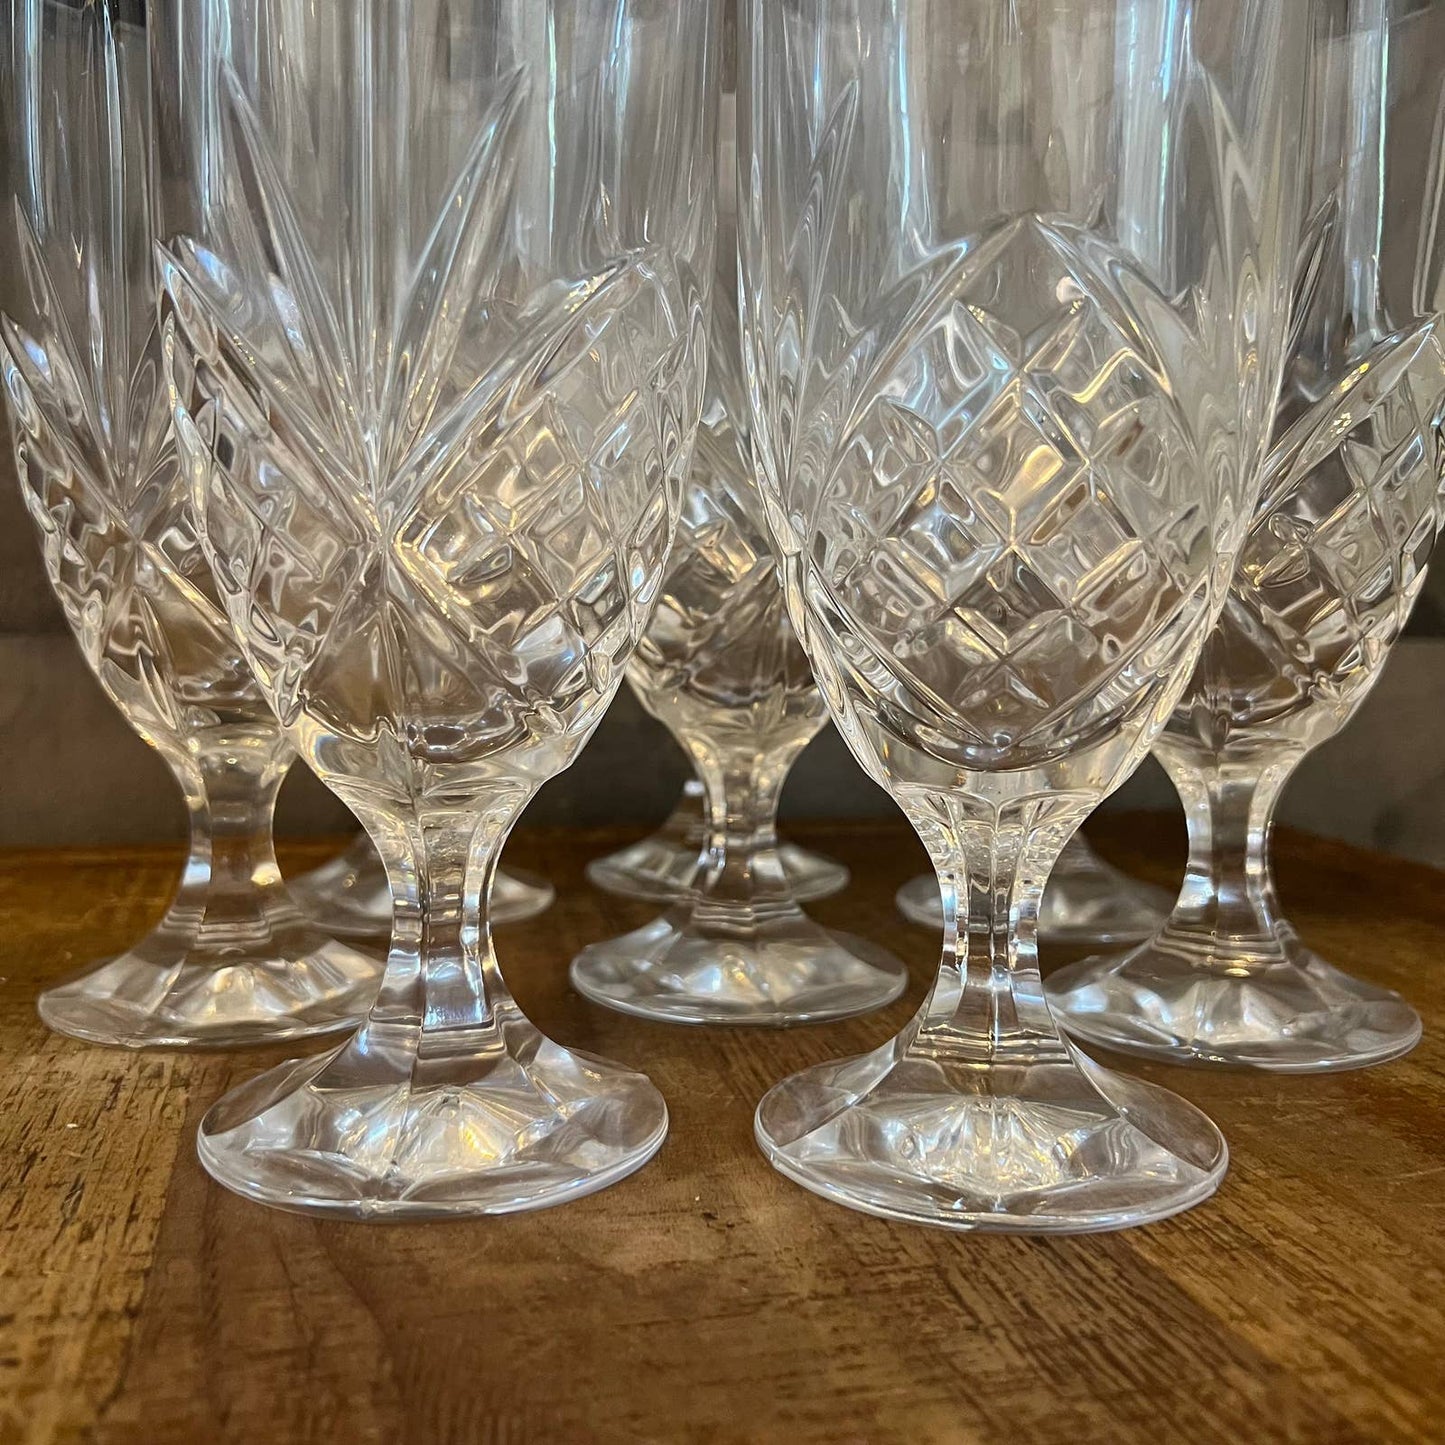 Godinger crystal Dublin pattern iced tea glasses - 2